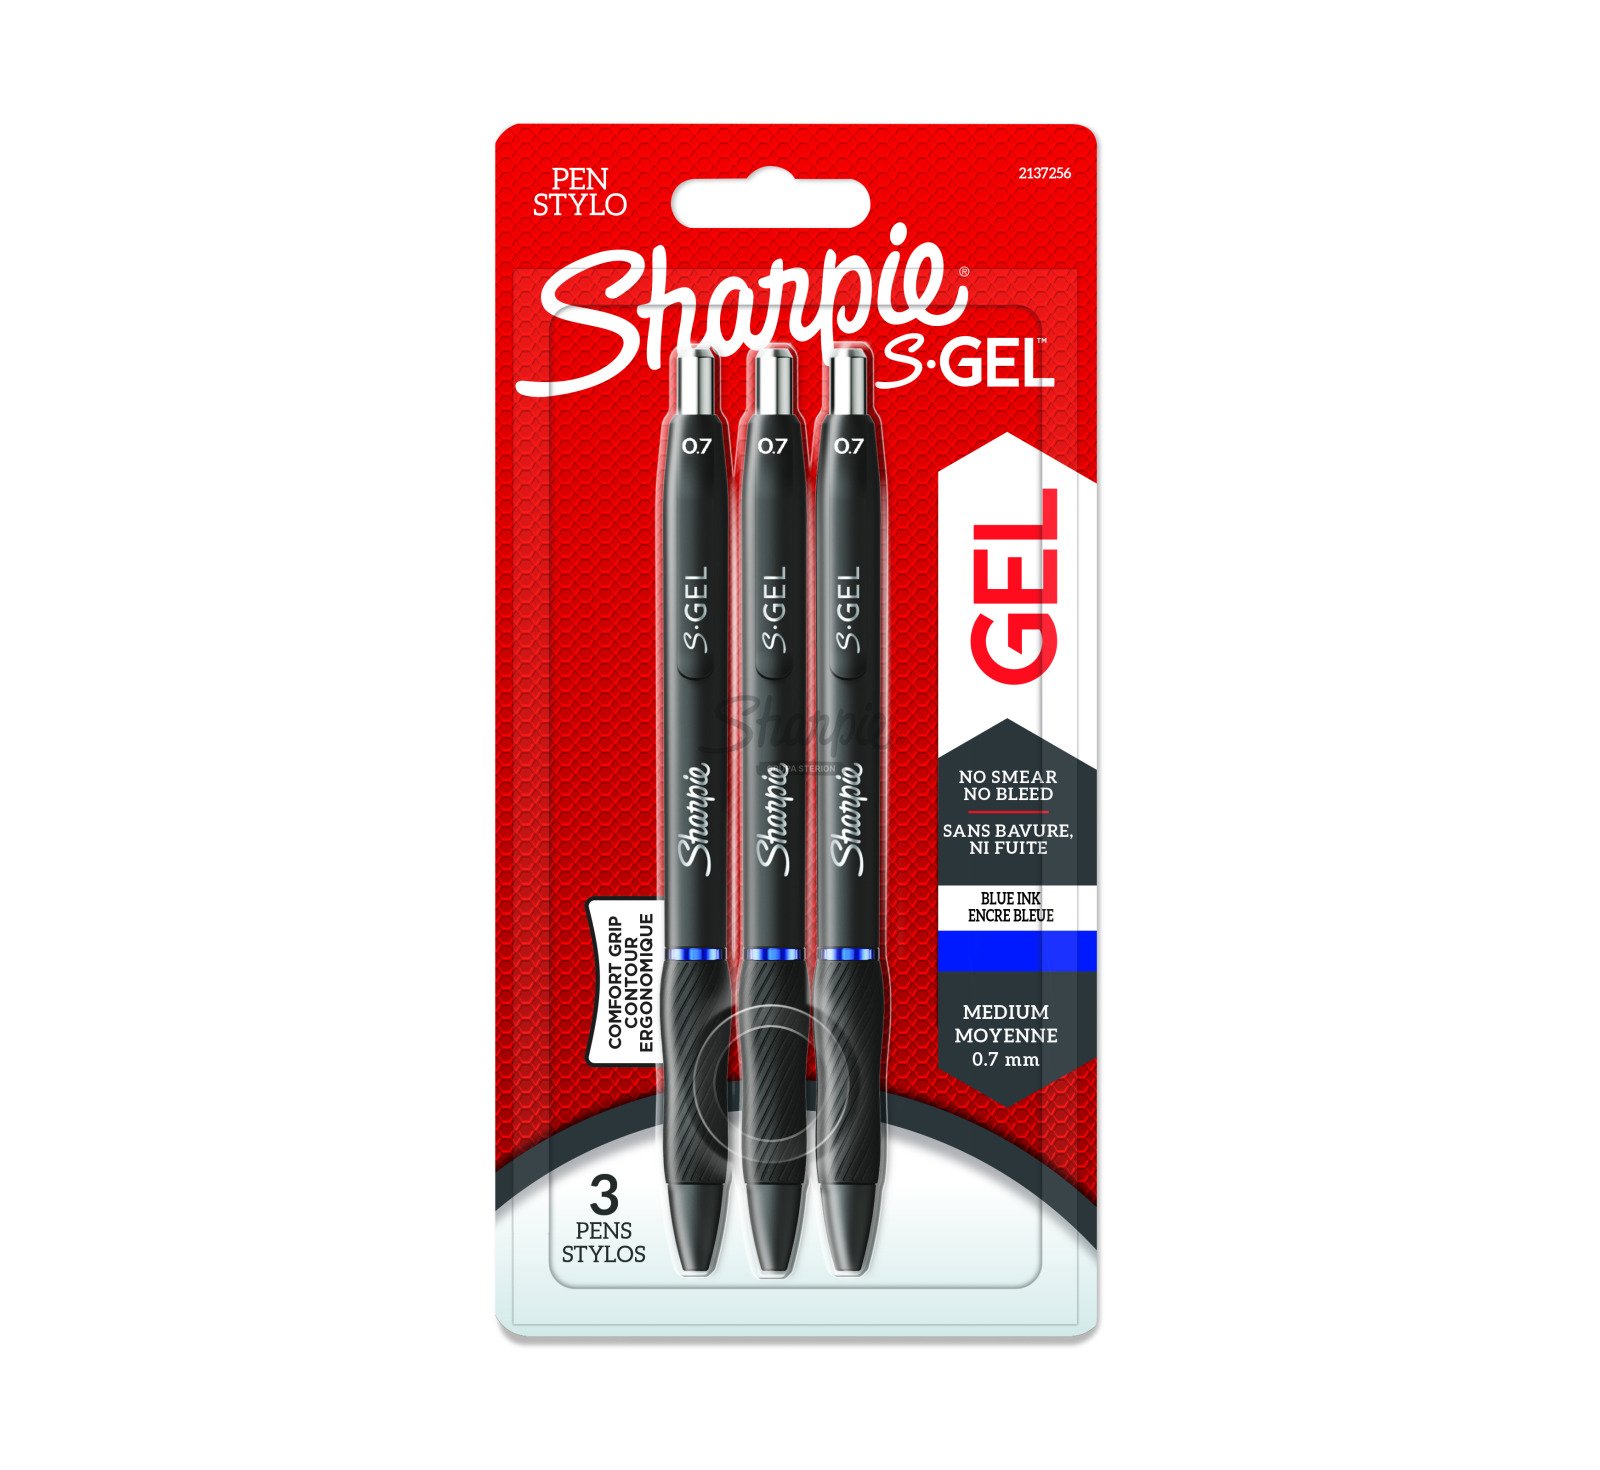 Zestaw Sharpie S-Gel, długopisy żelowe 3 szt., M (0.7mm), niebieskie